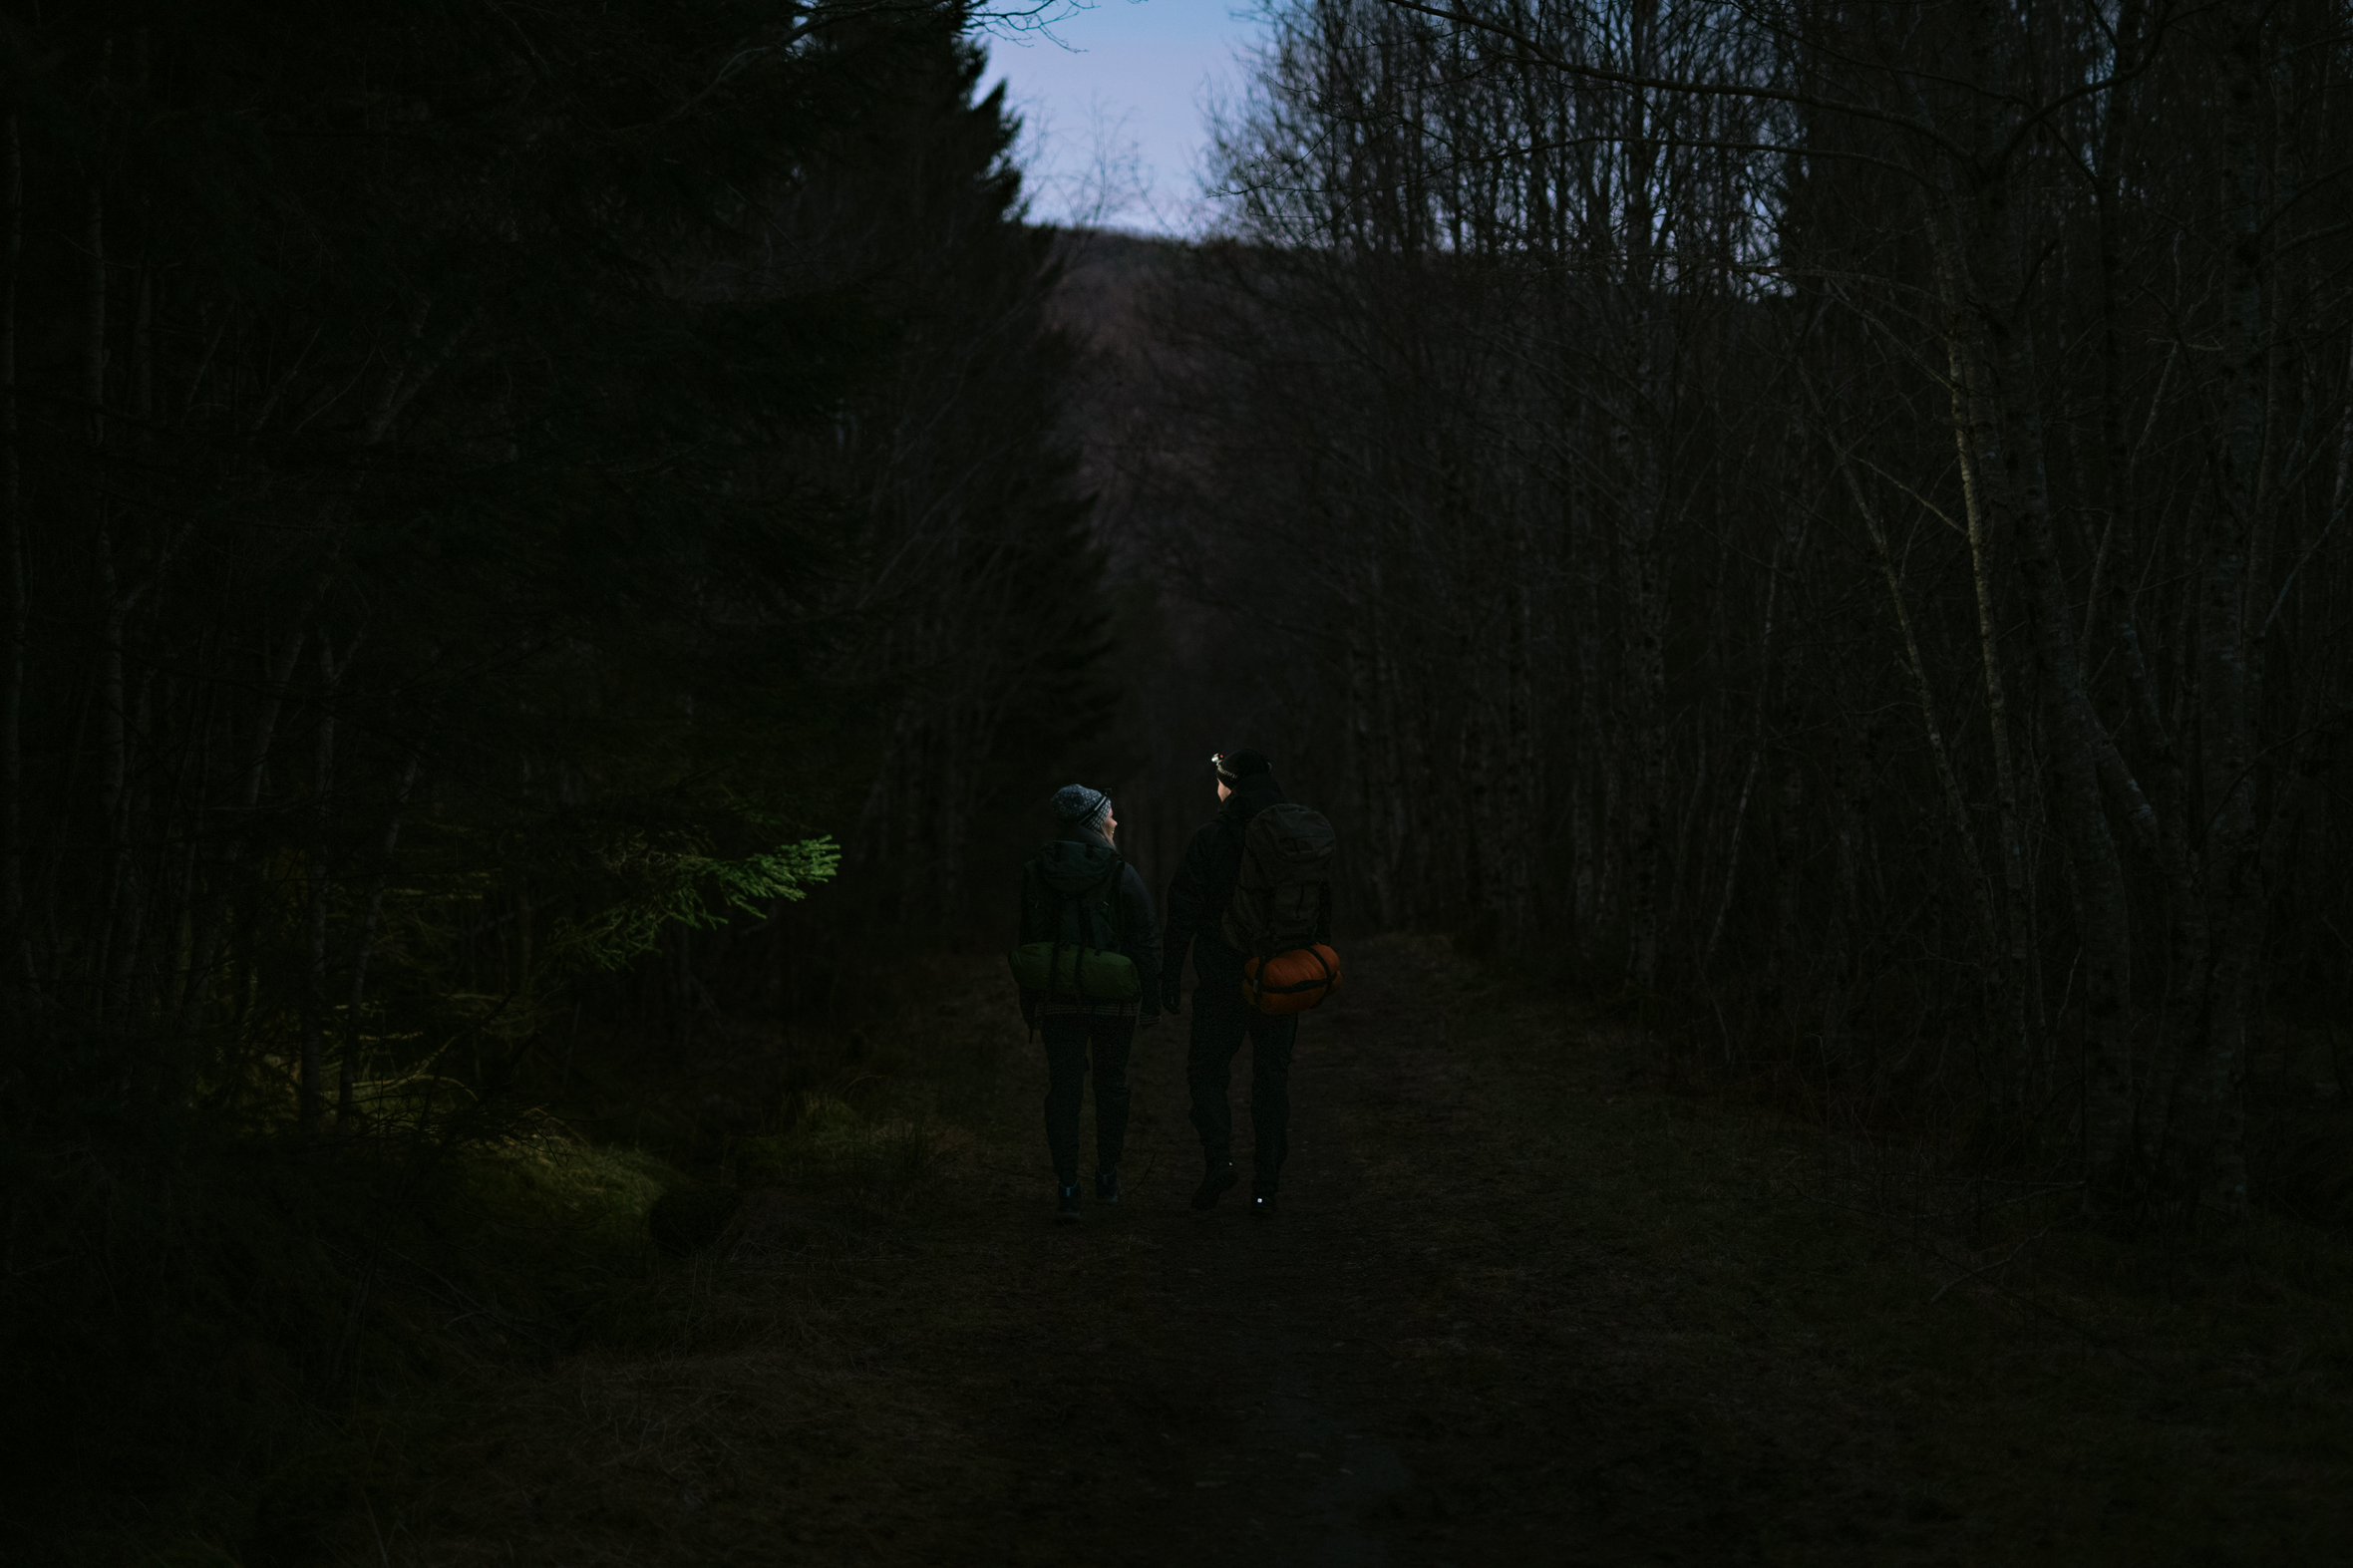 Mann og dame som går med hodelykter gjennom skogen ved skumring.